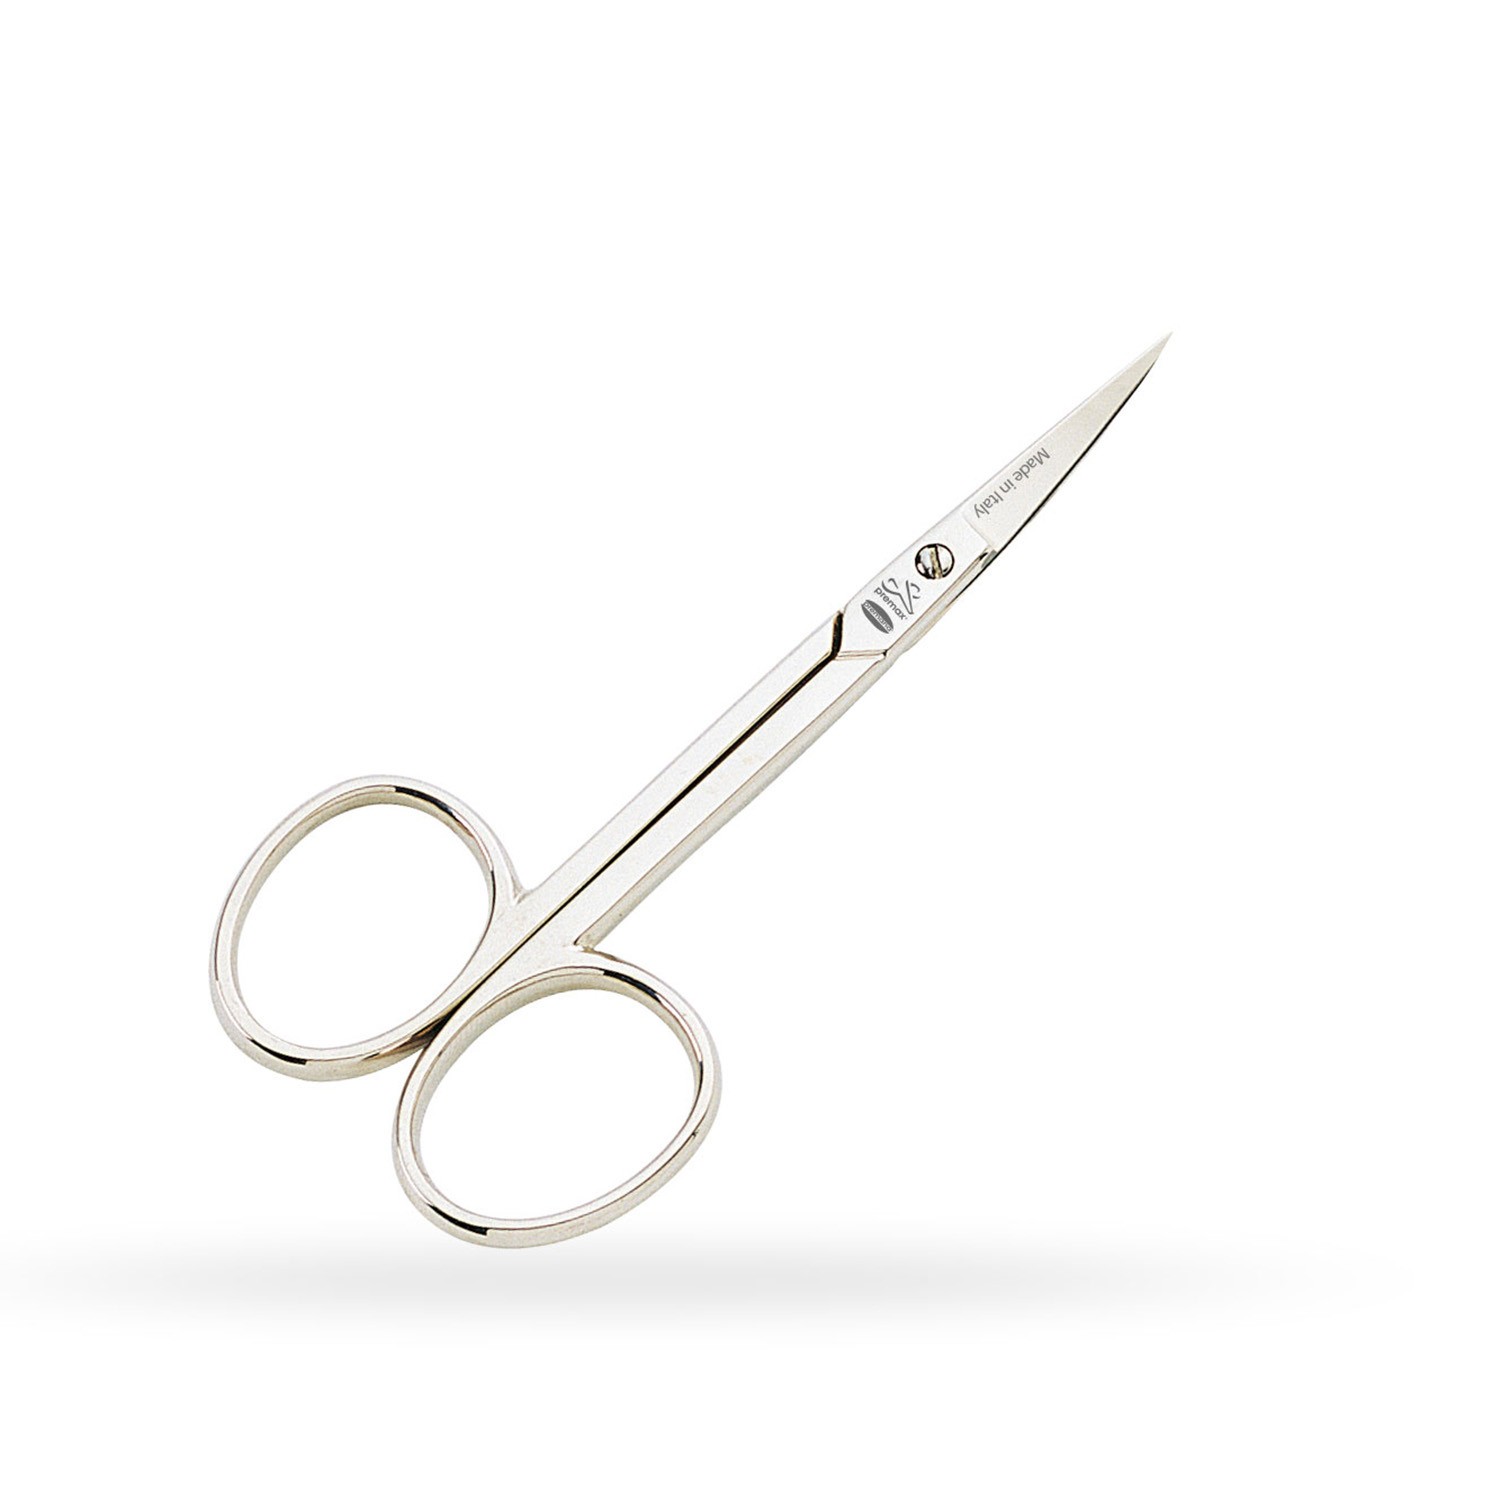 Premax Cuticle Scissors 3-1 / 2 "Curved Tip